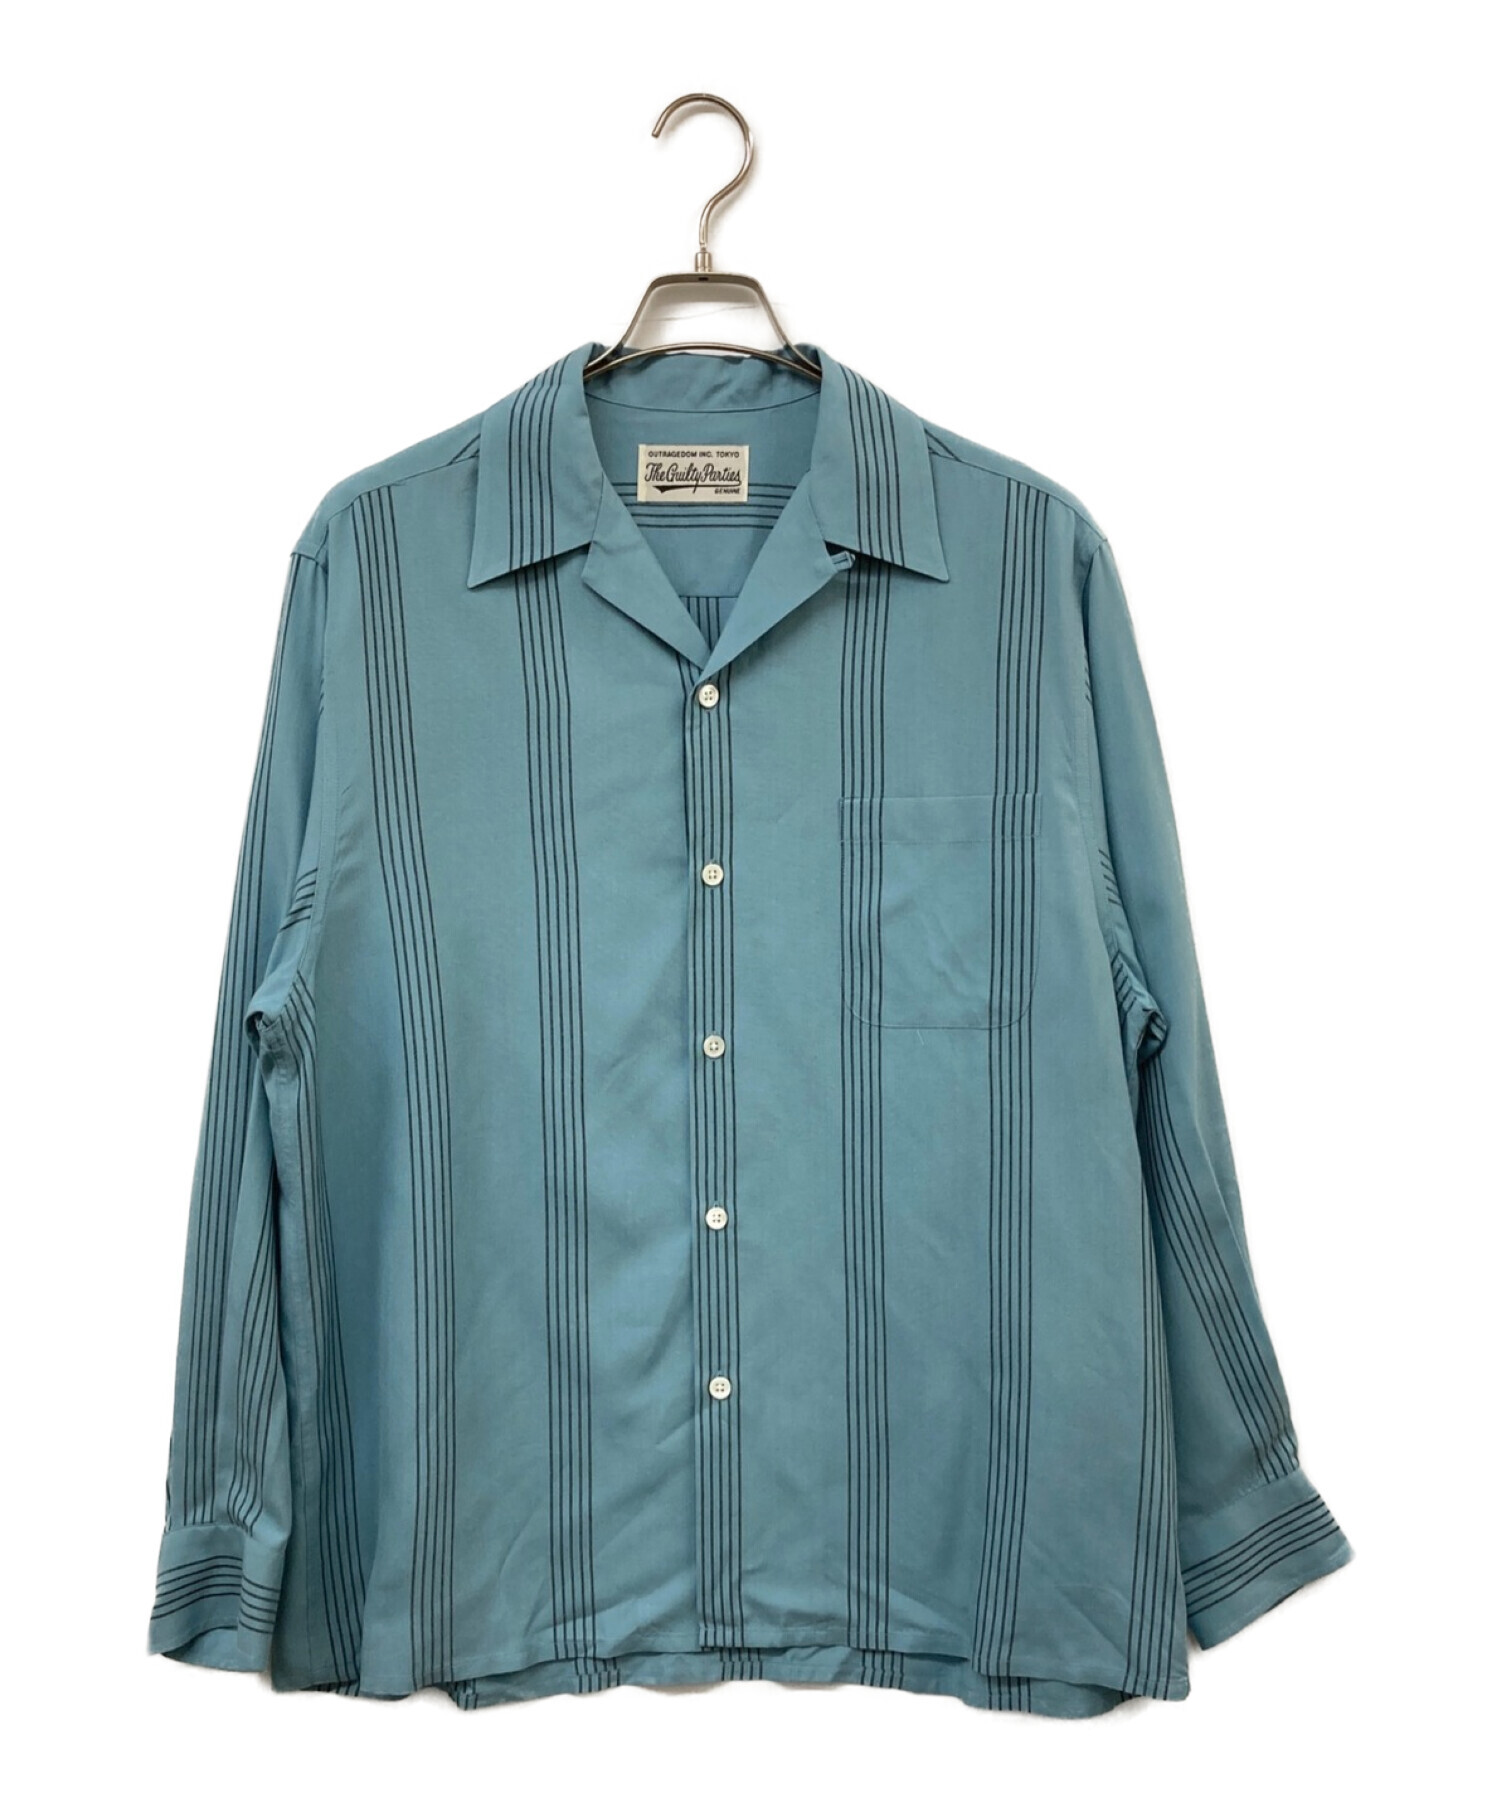 WACKO MARIA (ワコマリア) 23AW striped open collar shirt オープンカラーシャツ ブルー サイズ:M